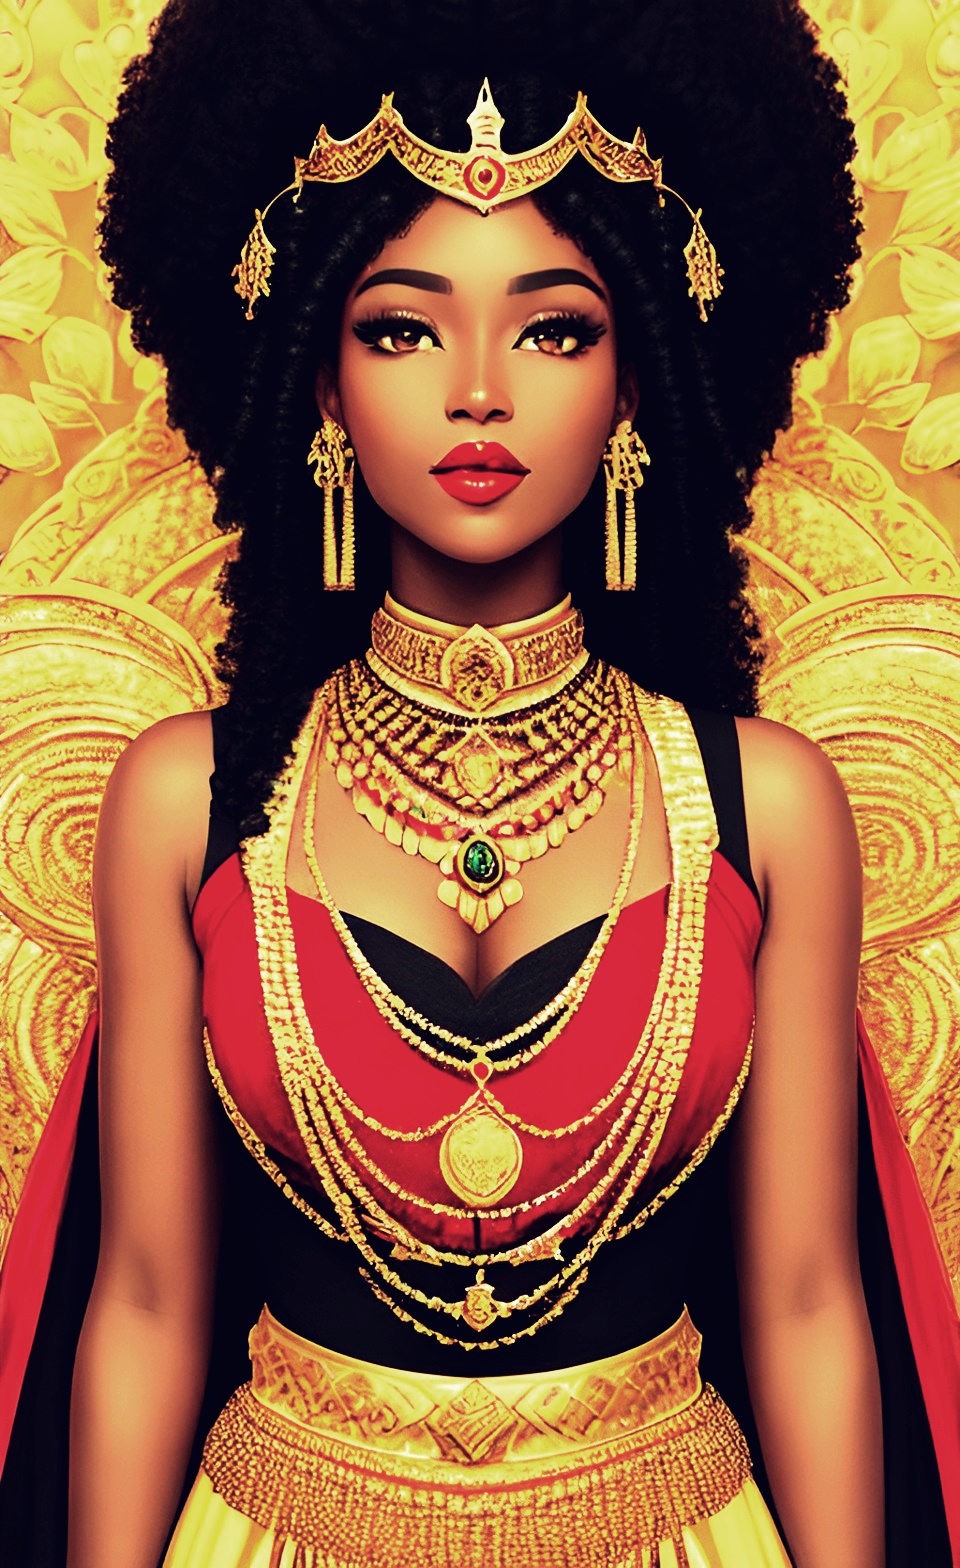 Mixed-race Queen of SHEBA art work Mixed423